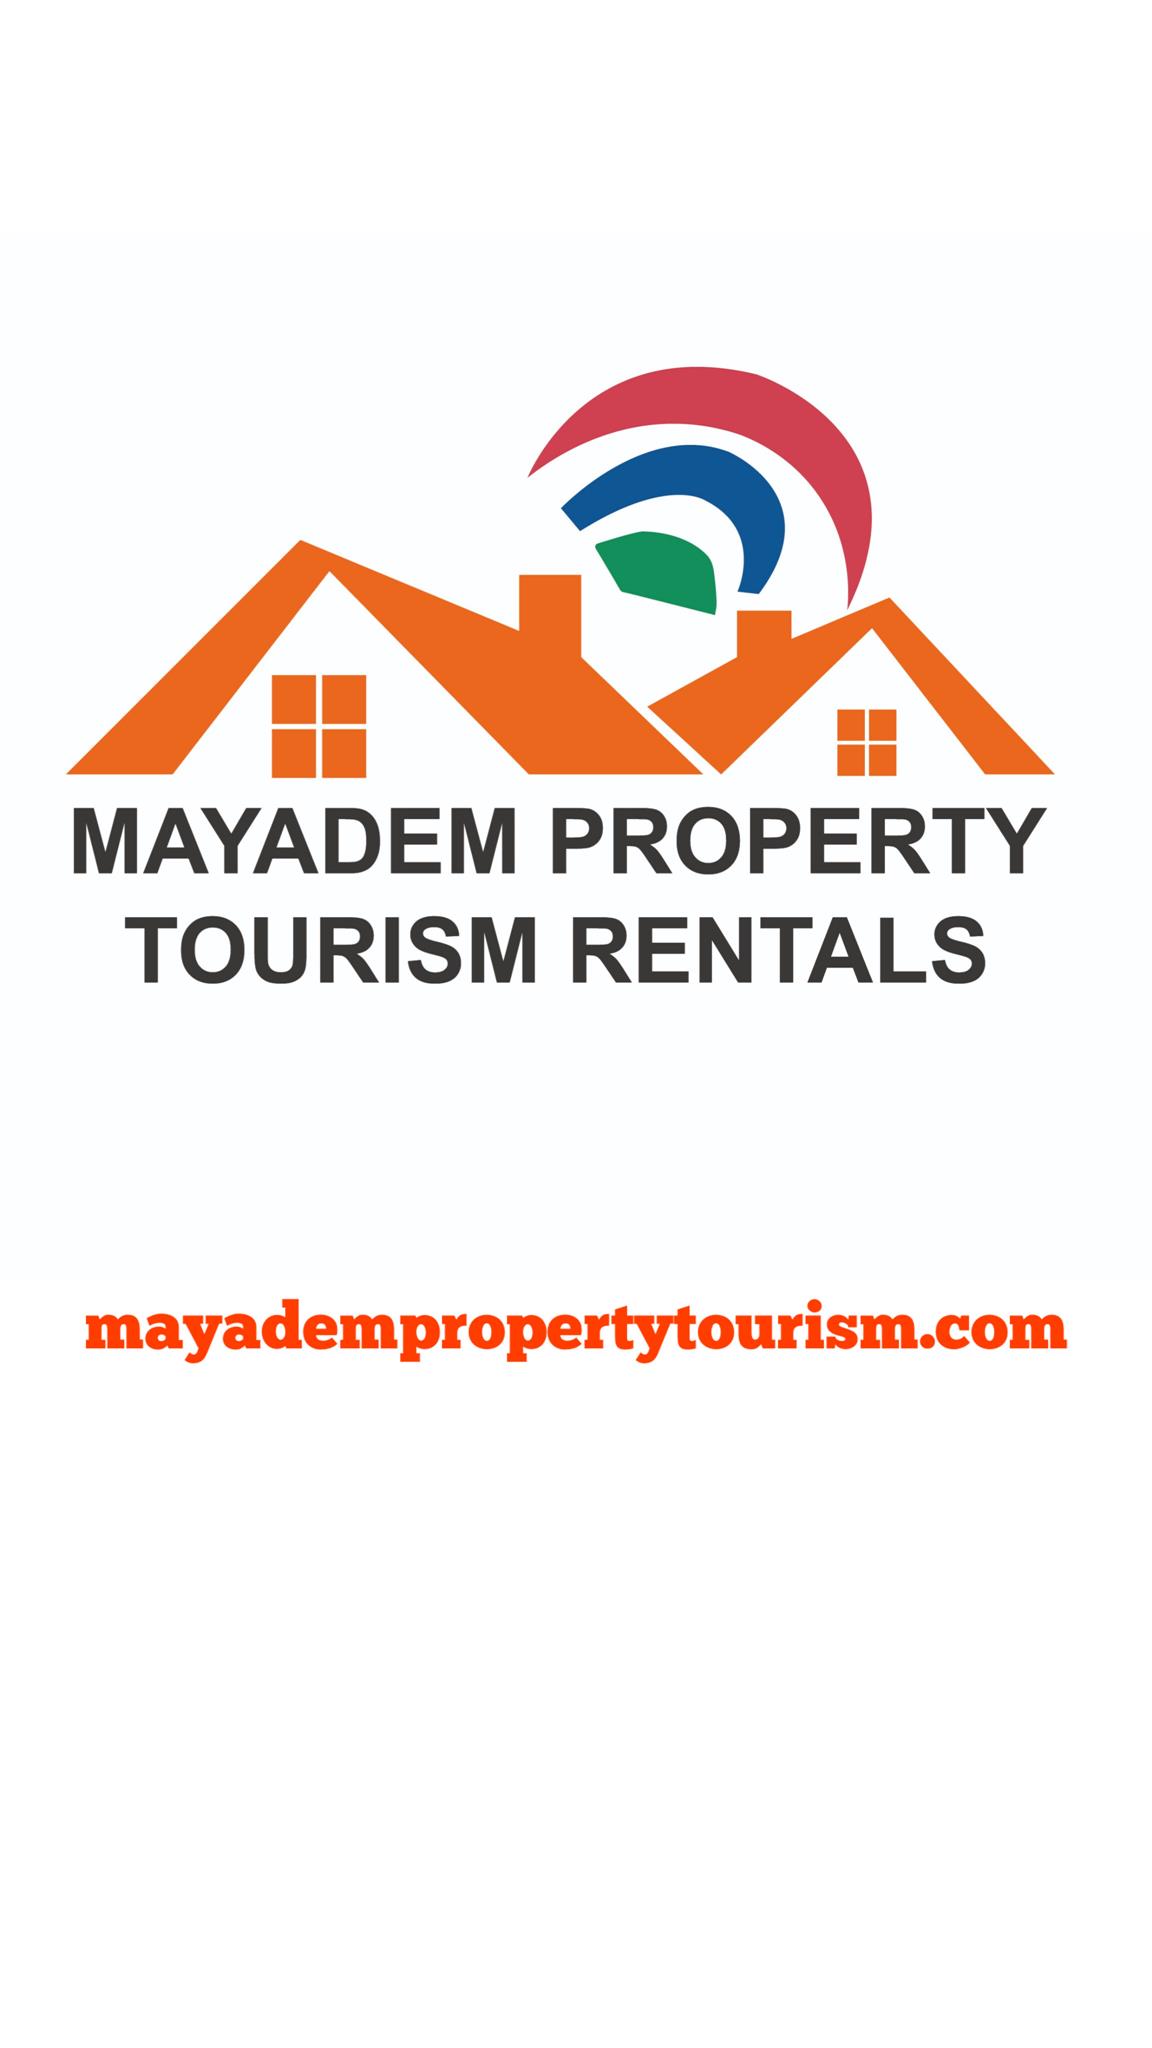 Mayadem Property Tourism